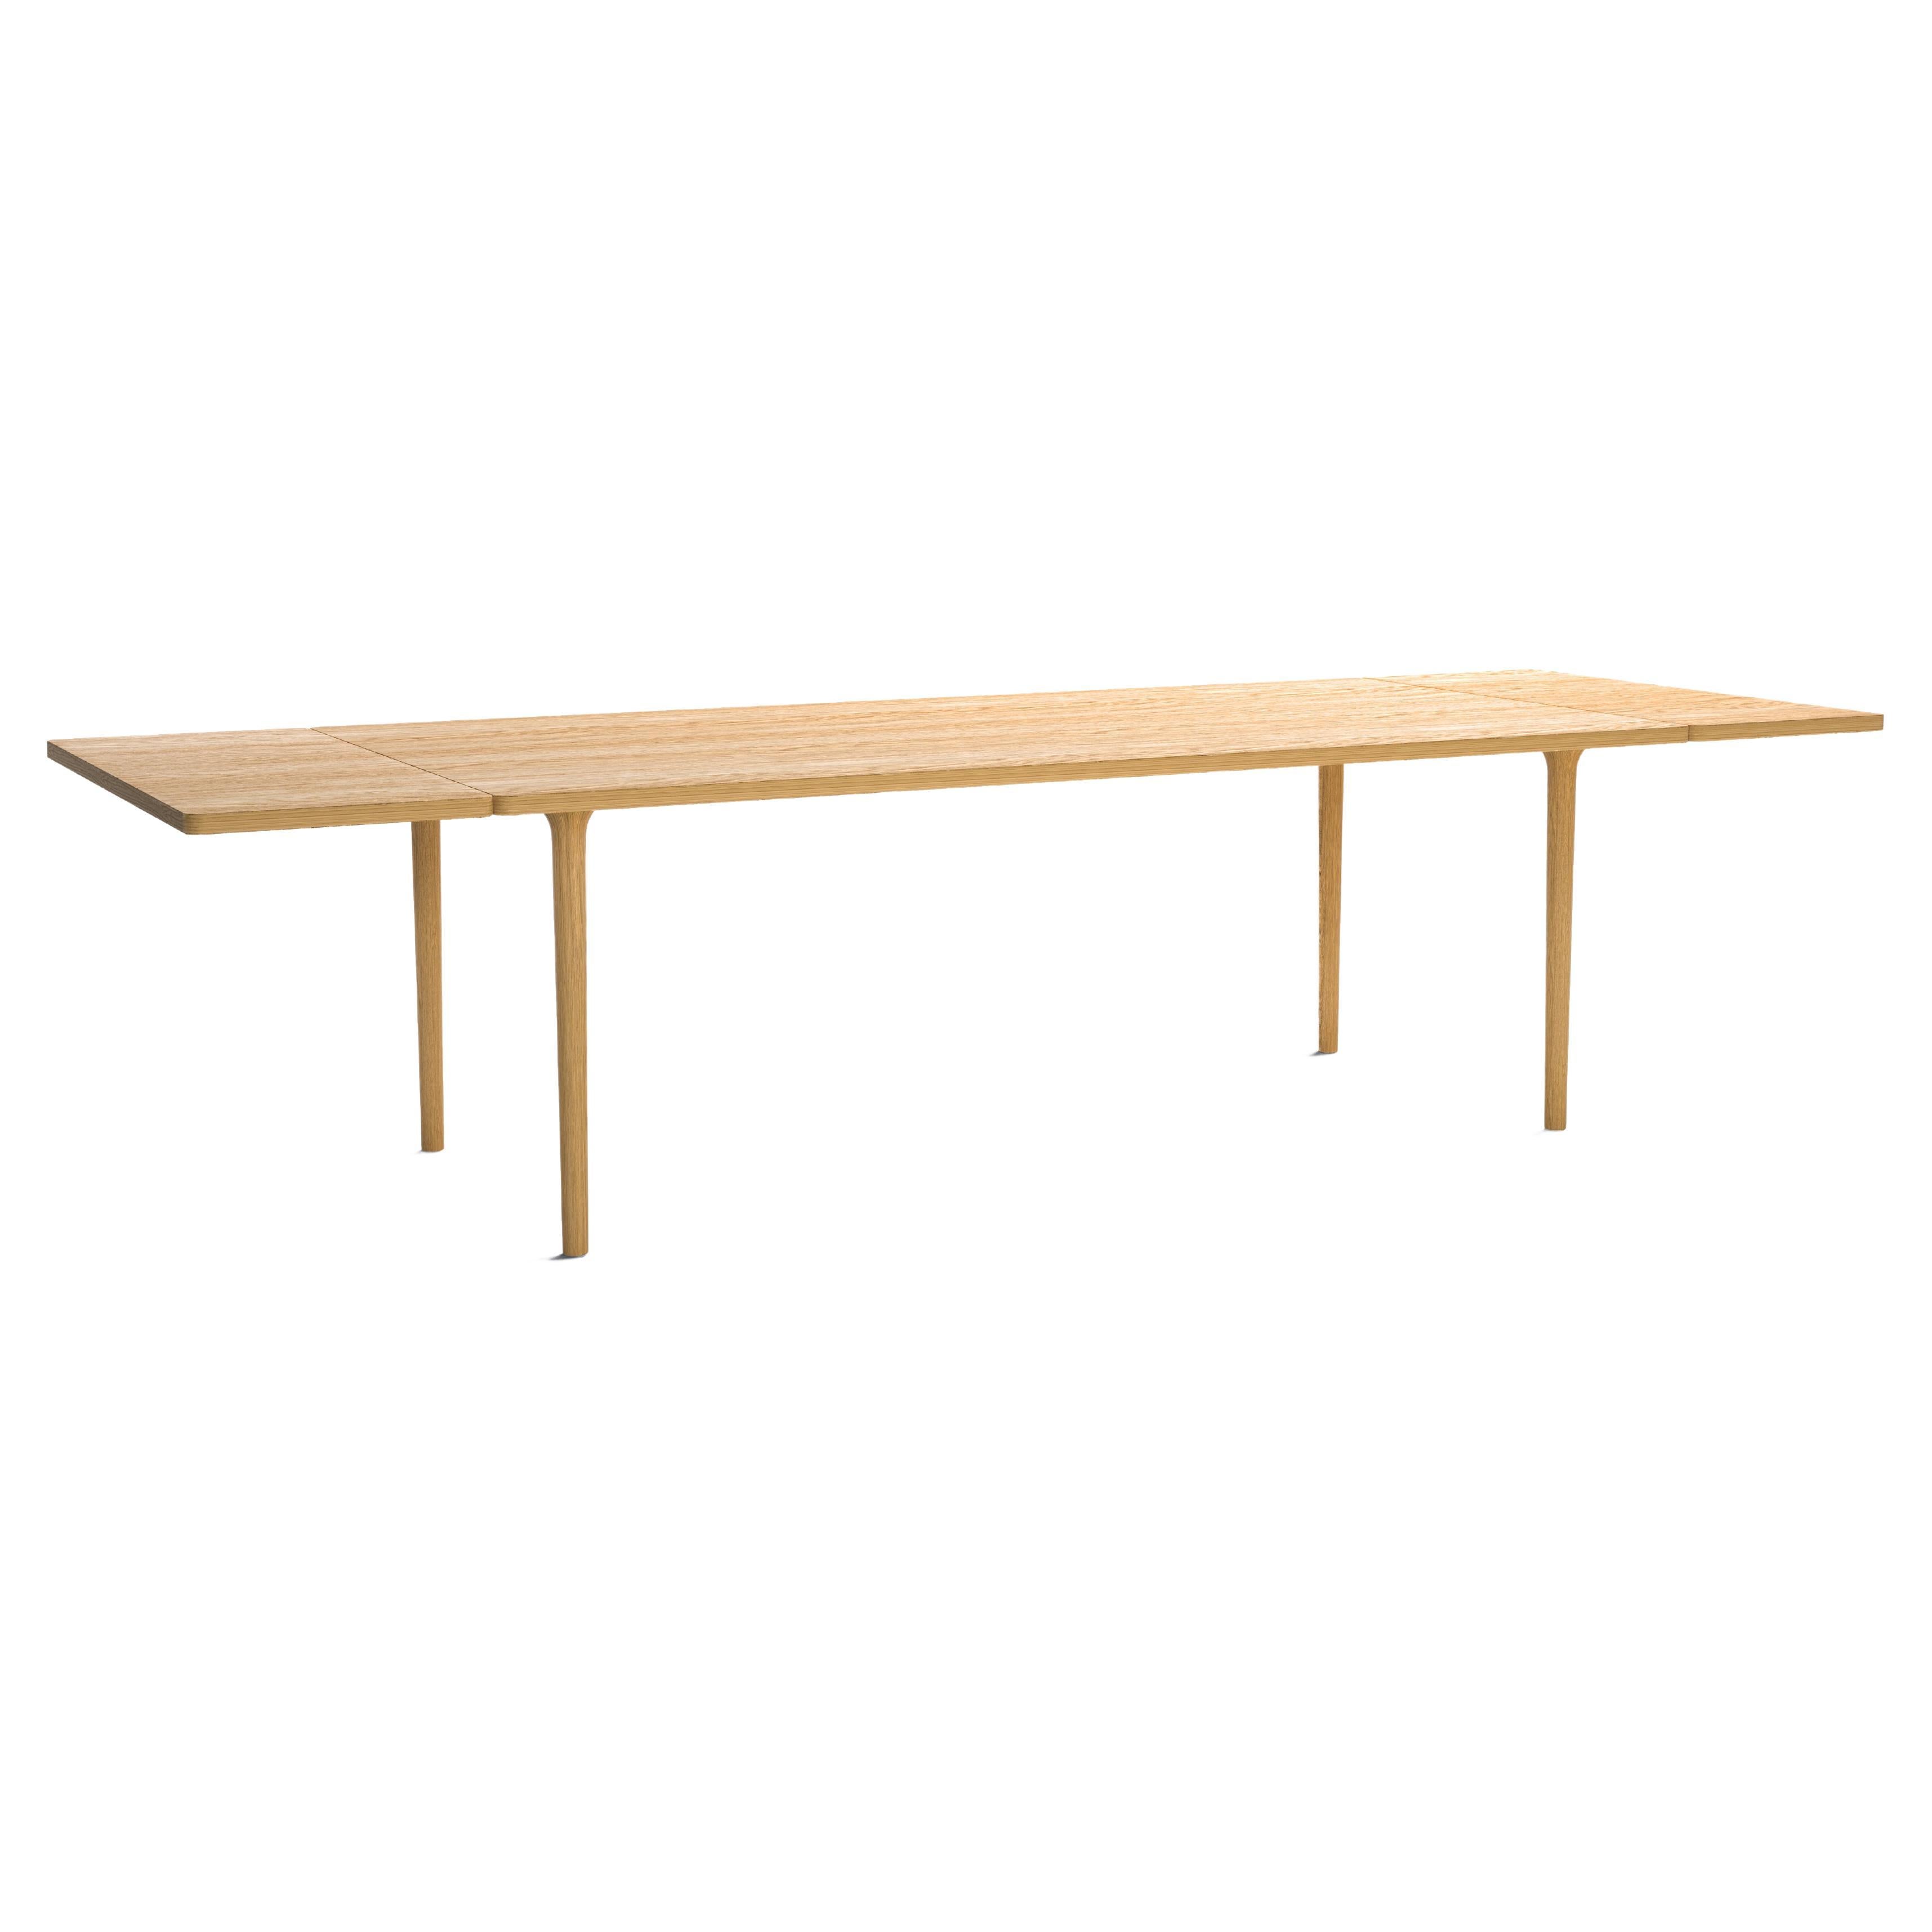 Moderner, ausziehbarer Tisch aus Eichenholz, minimalistisch